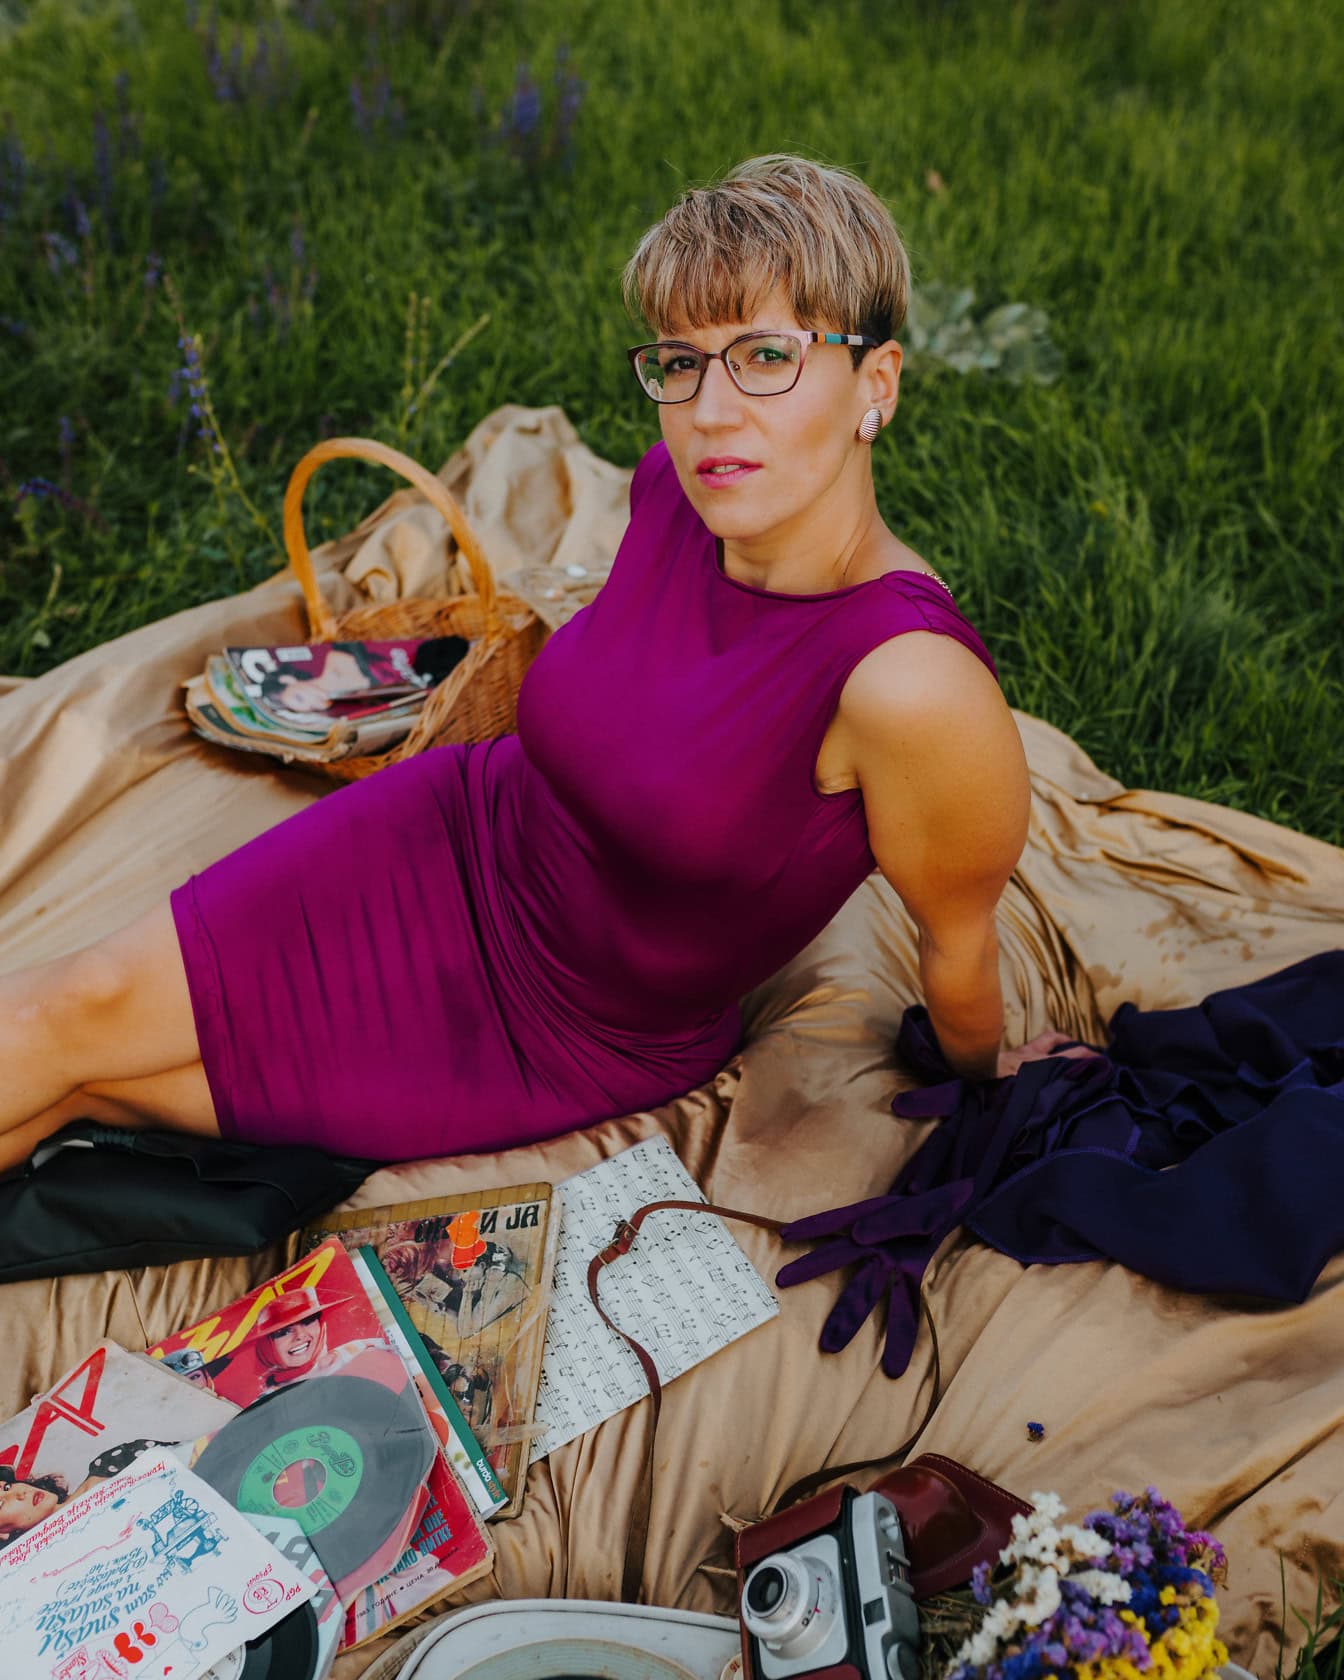 Wanita pirang tampan dengan gaun sutra ungu duduk di atas selimut dan menikmati piknik di padang rumput